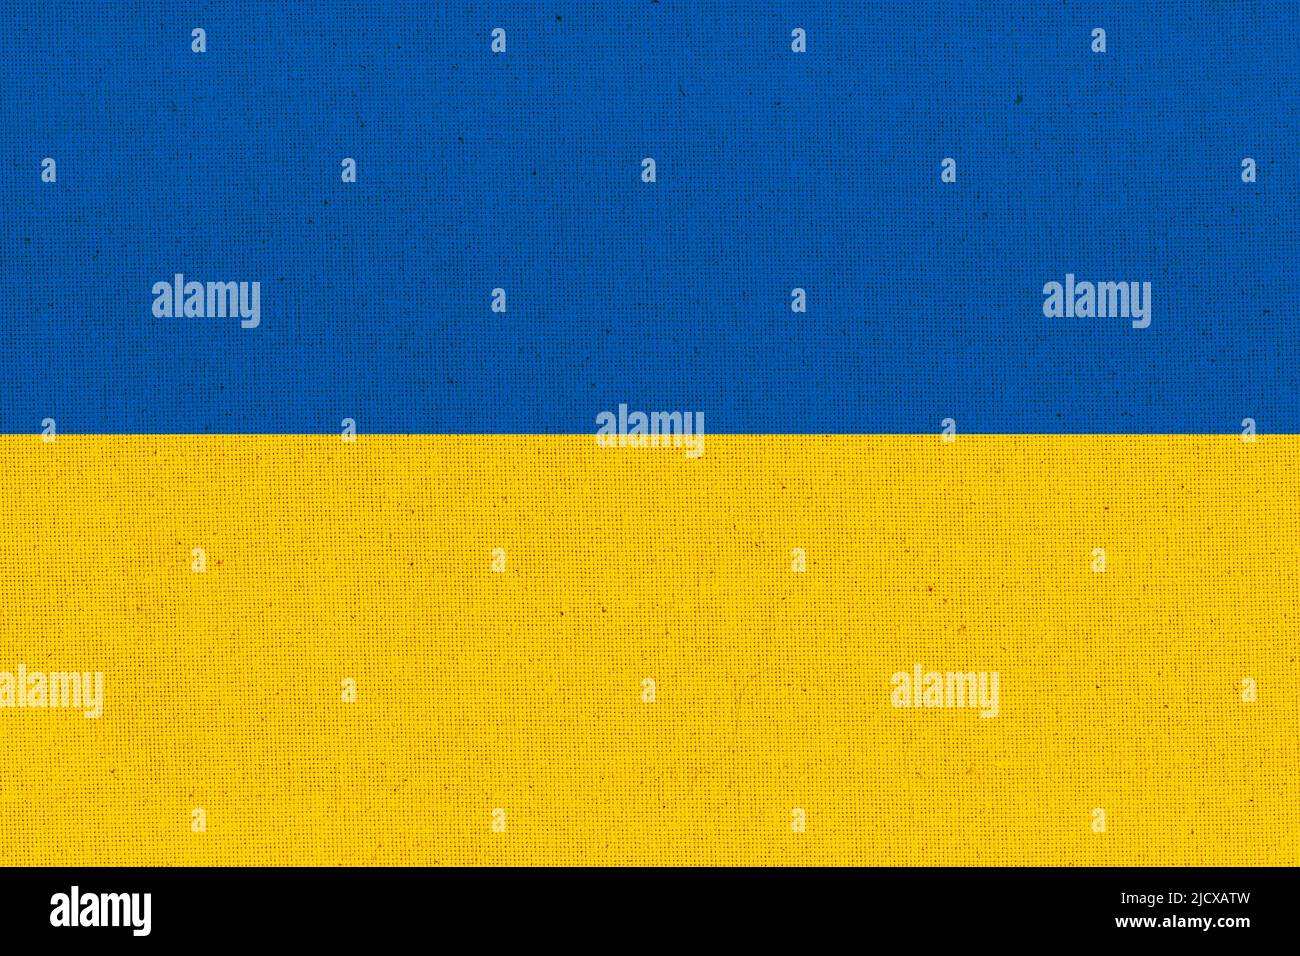 Flag of Ukraine. Ukrainian flag on fabric surface. Fabric texture. National symbol of Ukraine on patterned background. Republic of Turkey Stock Photo